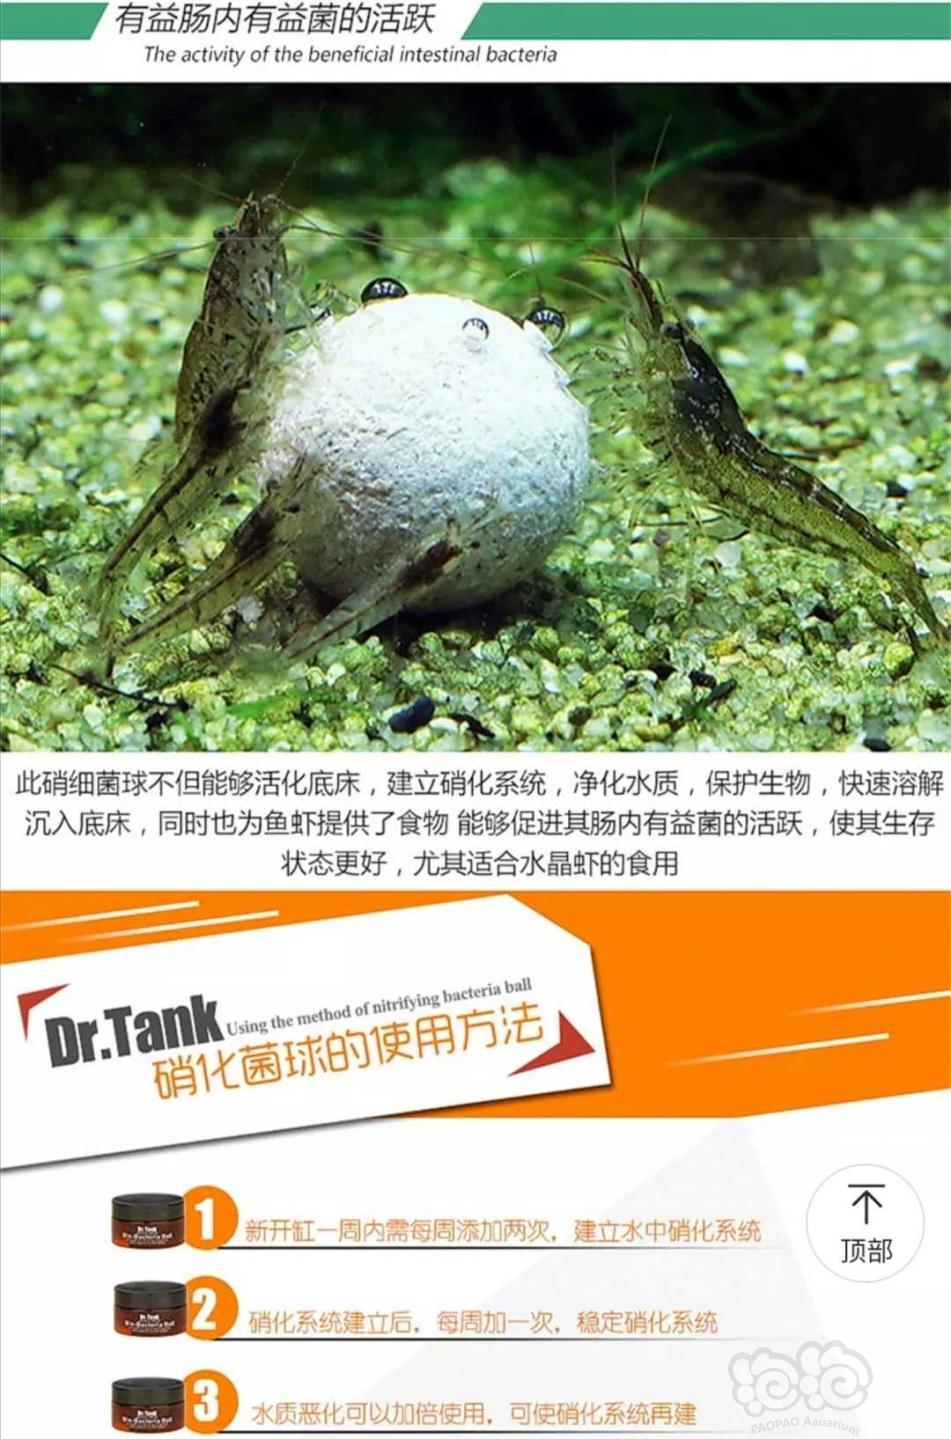 【用品】2019-11-06#RMB拍卖坦克二代硝化细菌球三粒装*3盒-图2